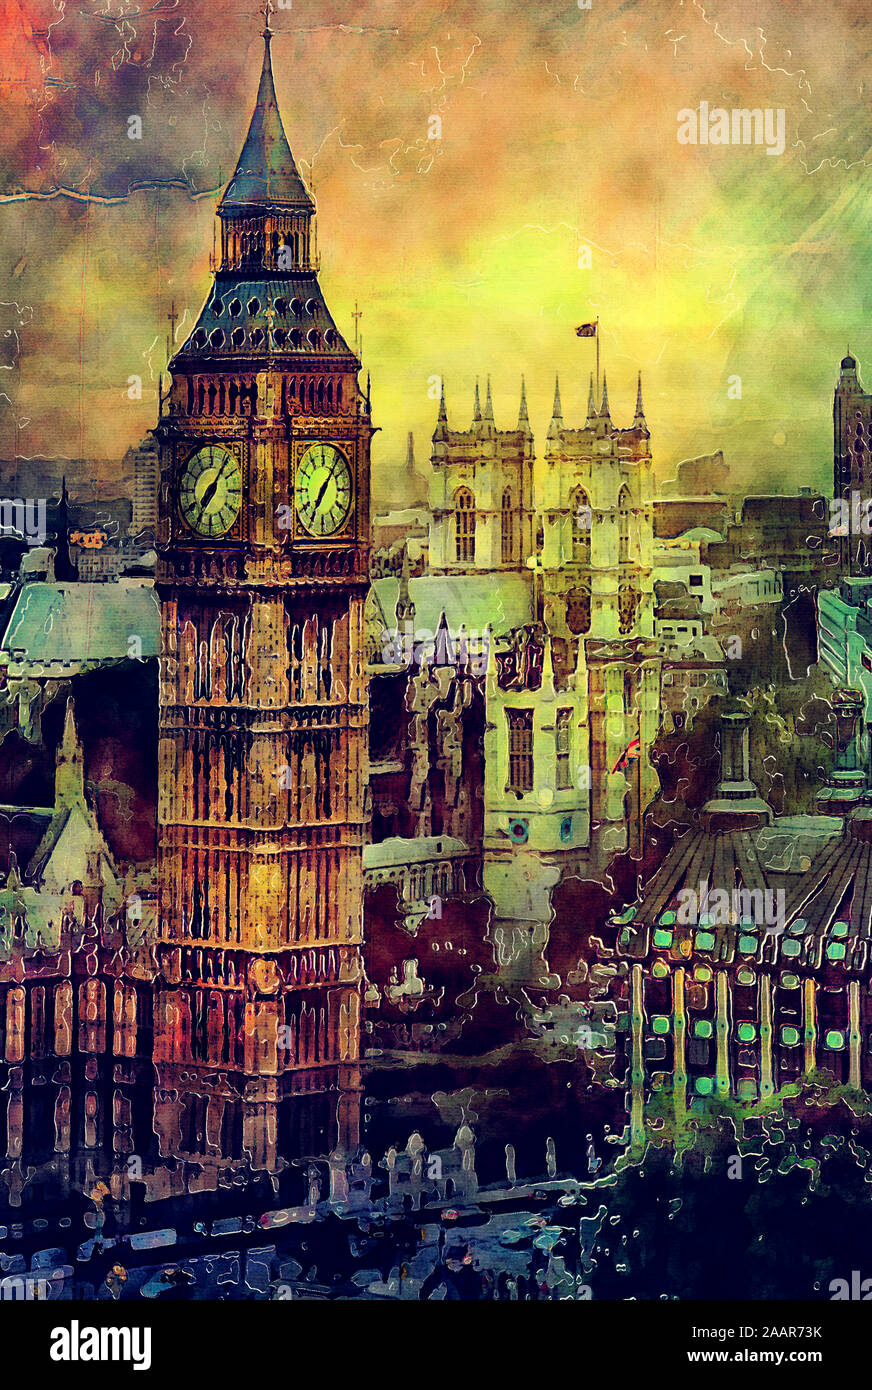 Big ben art. Лондон 19 век арт БИГБЕН. Лондон башня Биг-Бенд арт. Лондон пейзаж. Искусство Лондона.